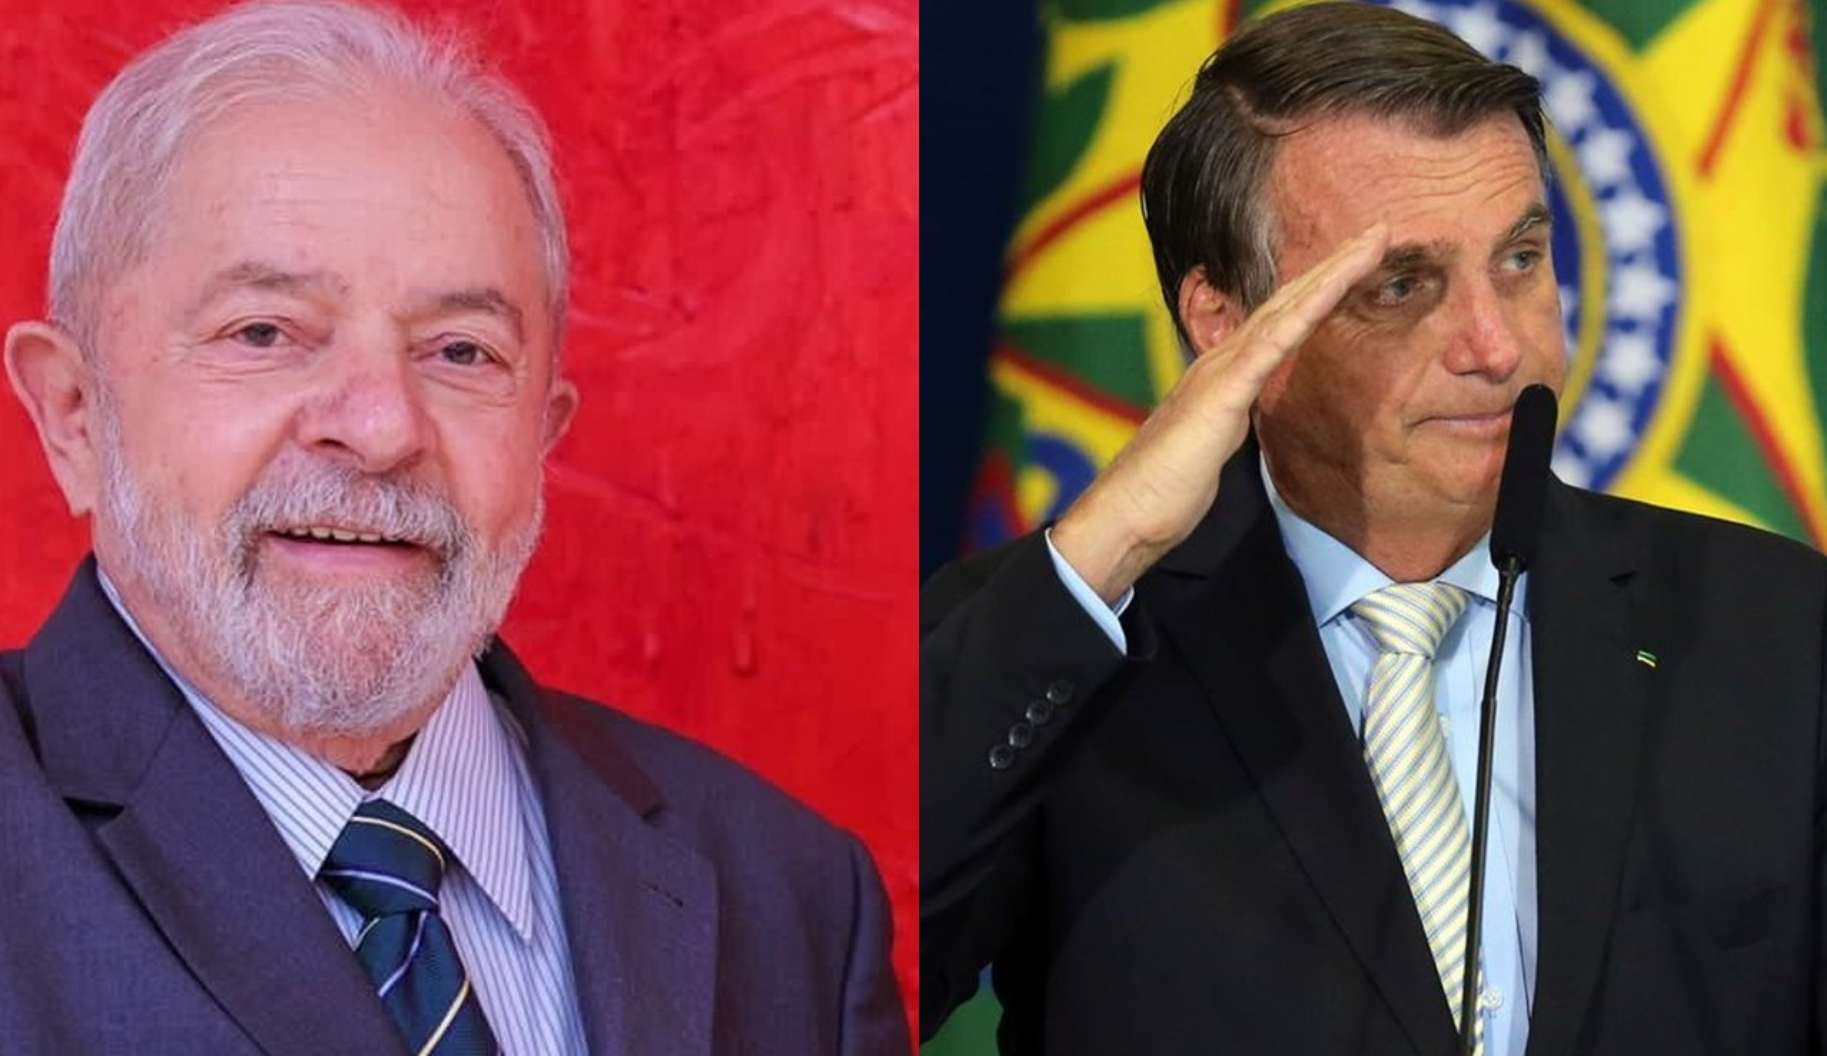 Com discursos a favor da democracia, Lula amplia vantagem contra Bolsonaro